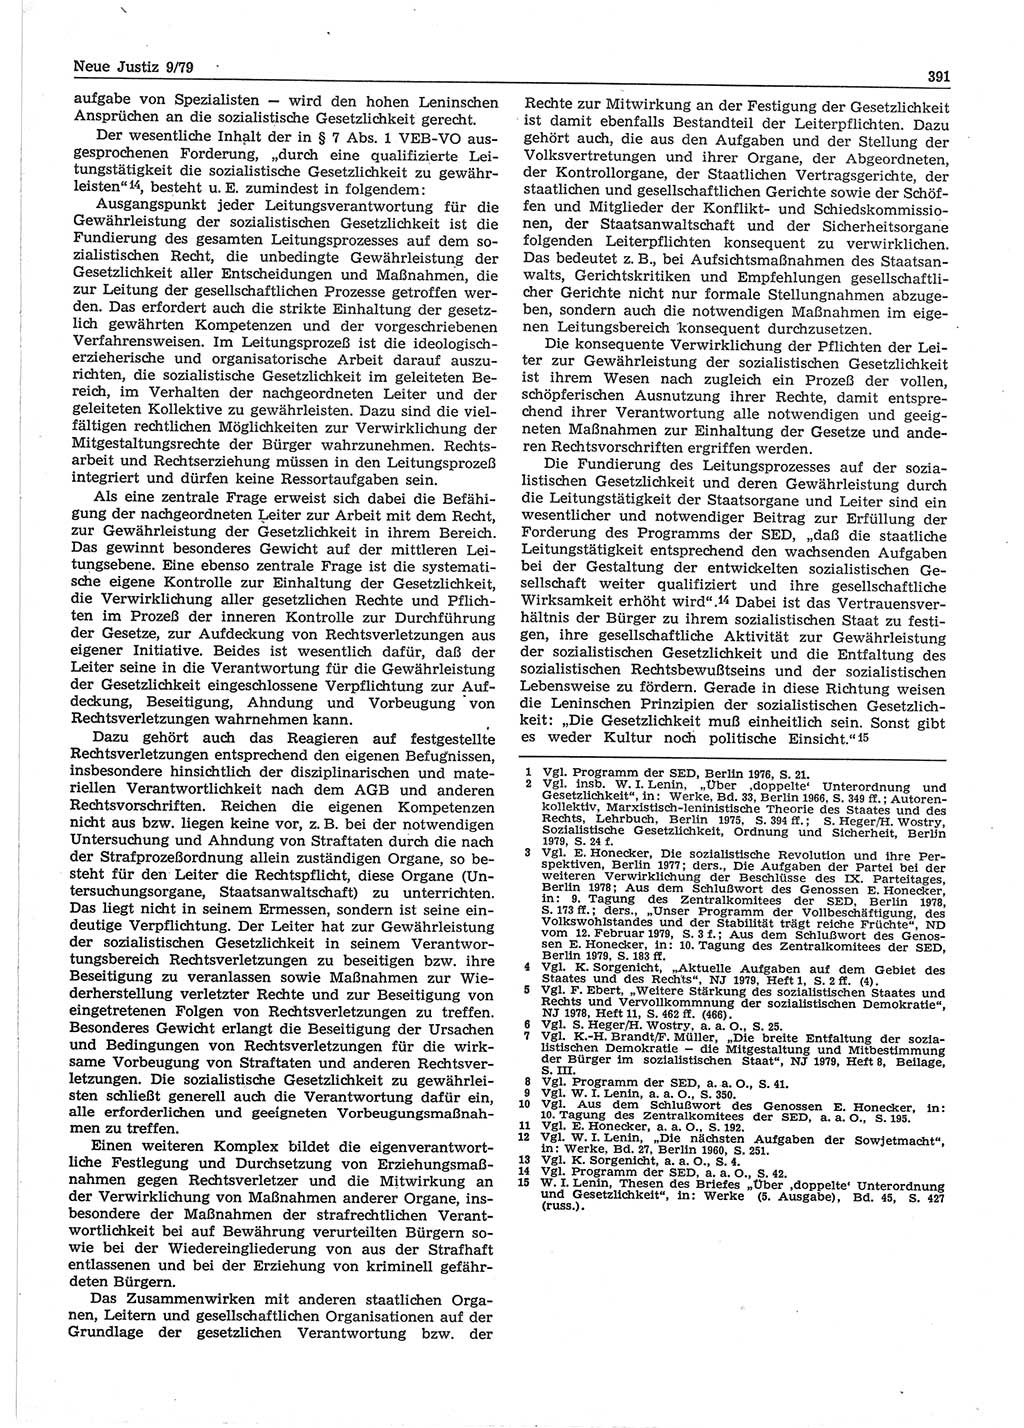 Neue Justiz (NJ), Zeitschrift für sozialistisches Recht und Gesetzlichkeit [Deutsche Demokratische Republik (DDR)], 33. Jahrgang 1979, Seite 391 (NJ DDR 1979, S. 391)